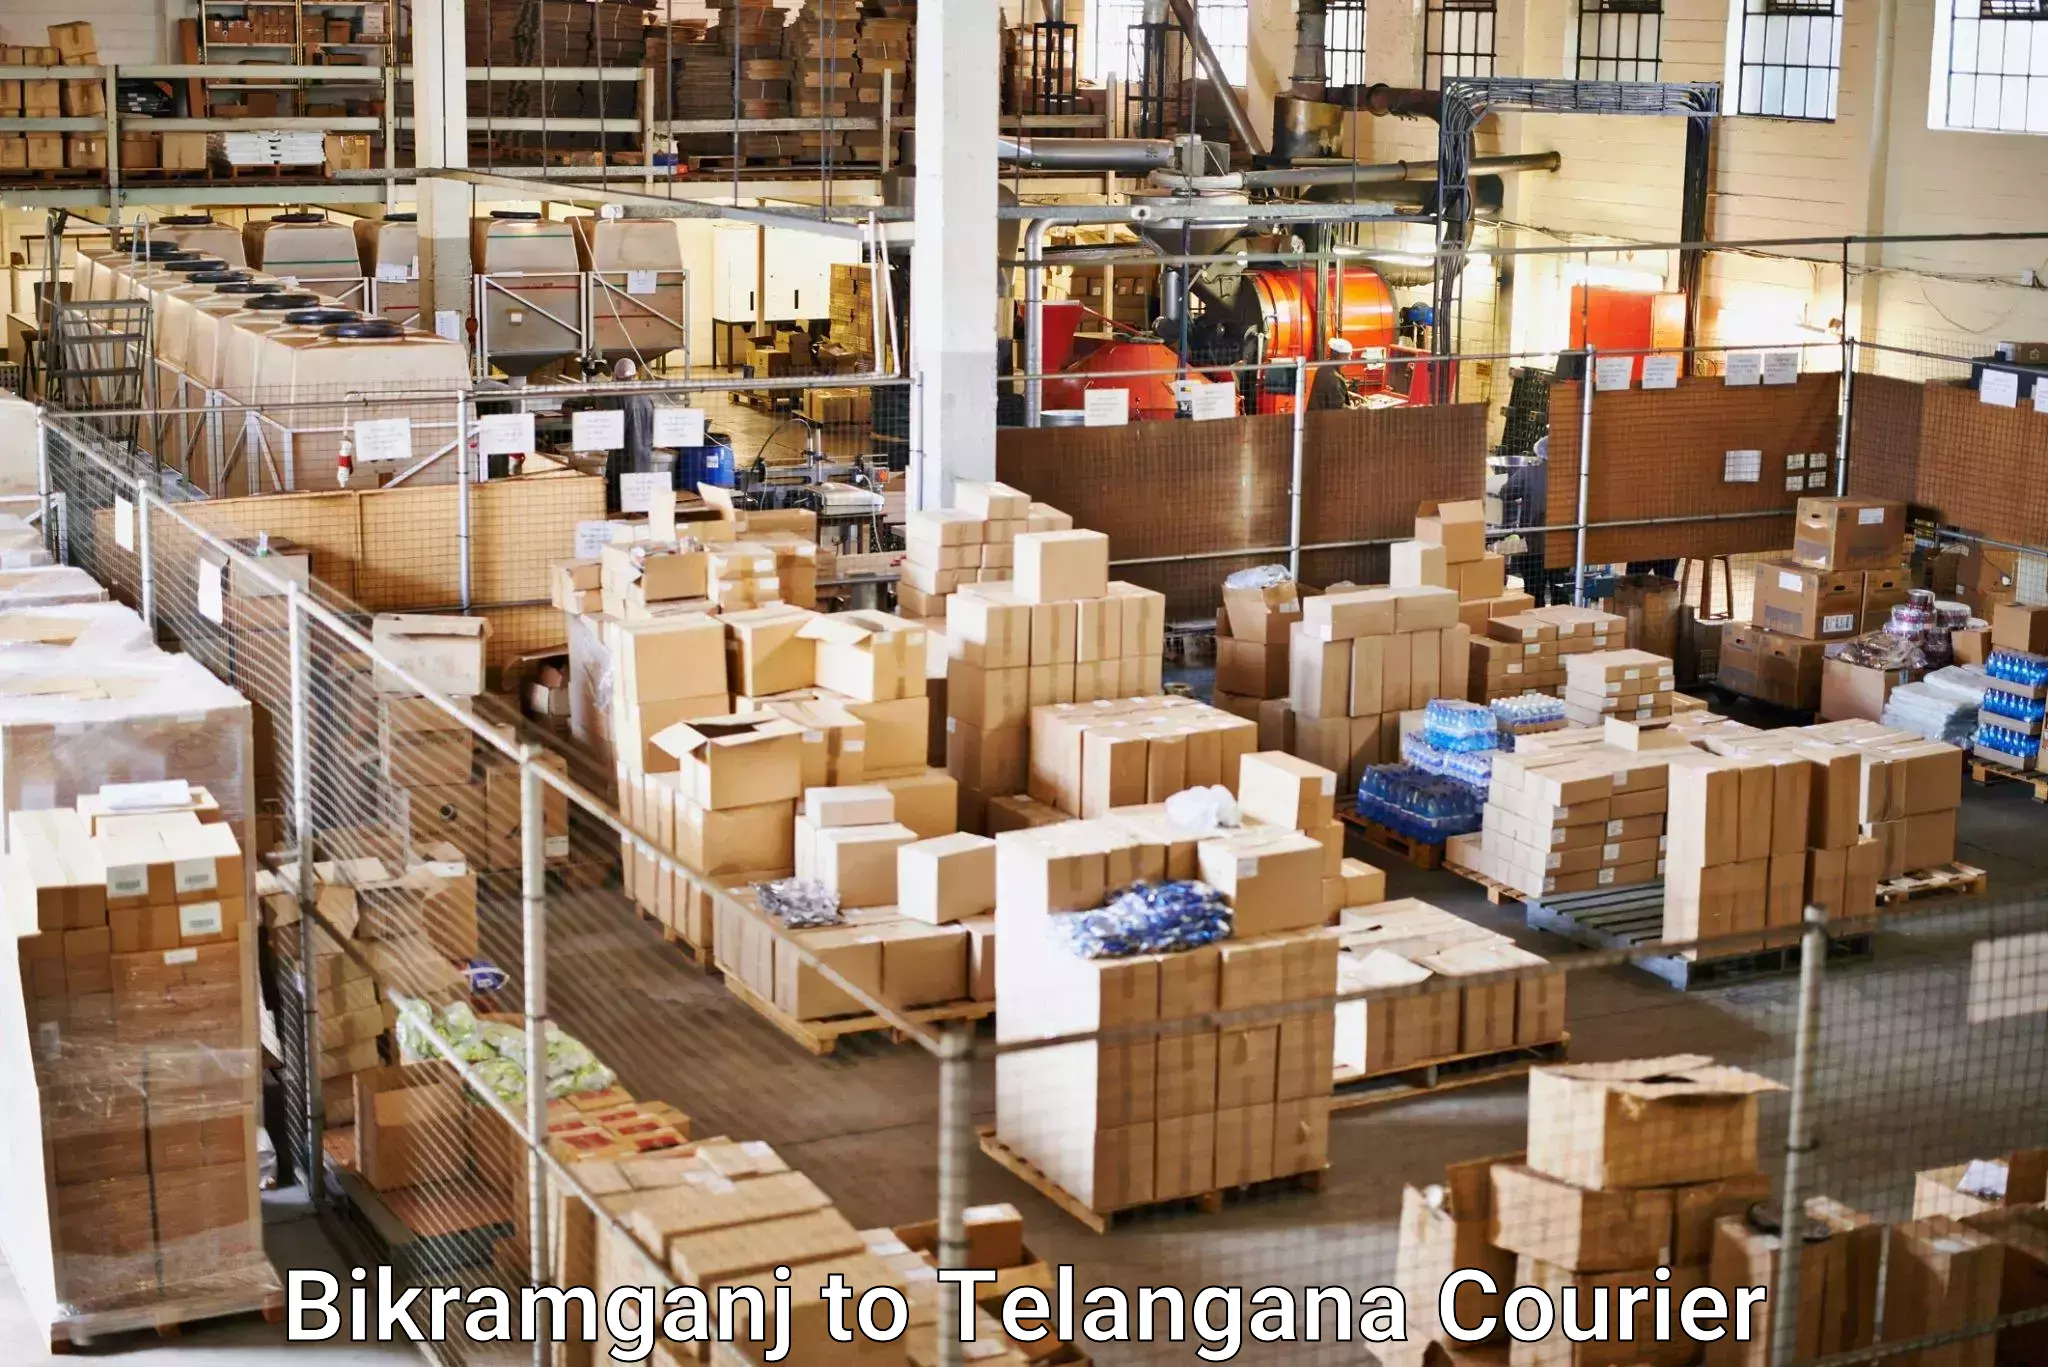 Speedy delivery service Bikramganj to Tallada